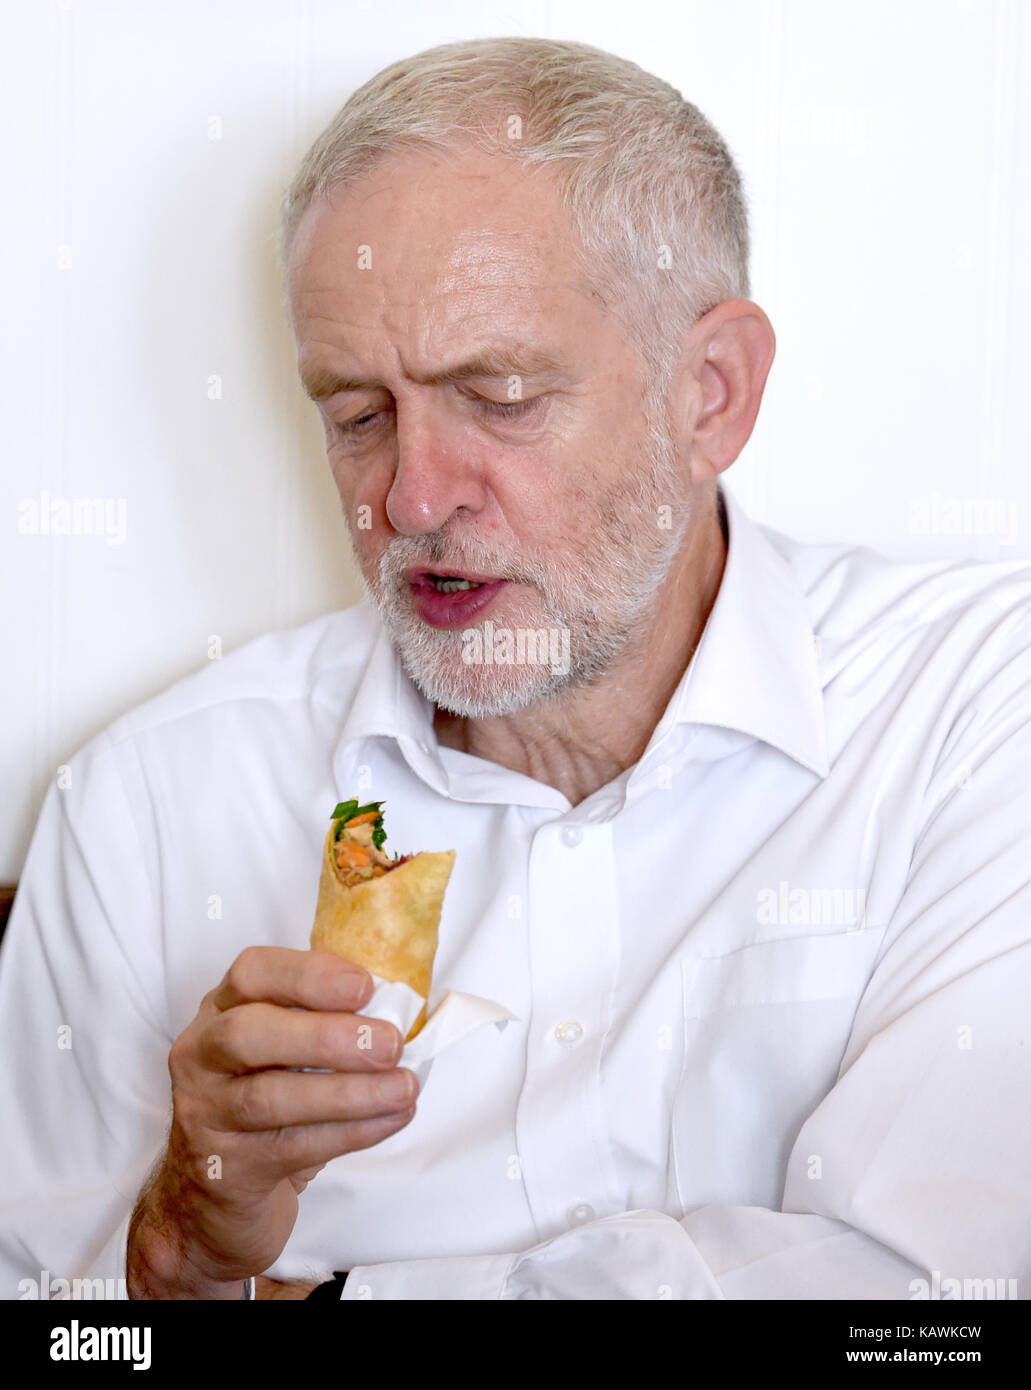 Brighton uk 23 septembre 2017 Jeremy Corbyn - le chef du parti travailliste lors d'une visite au café boulangerie à Worthing avant le début de la conférence du parti travailliste qui aura lieu à Brighton au cours des prochains jours photographie prise par Simon dack Banque D'Images